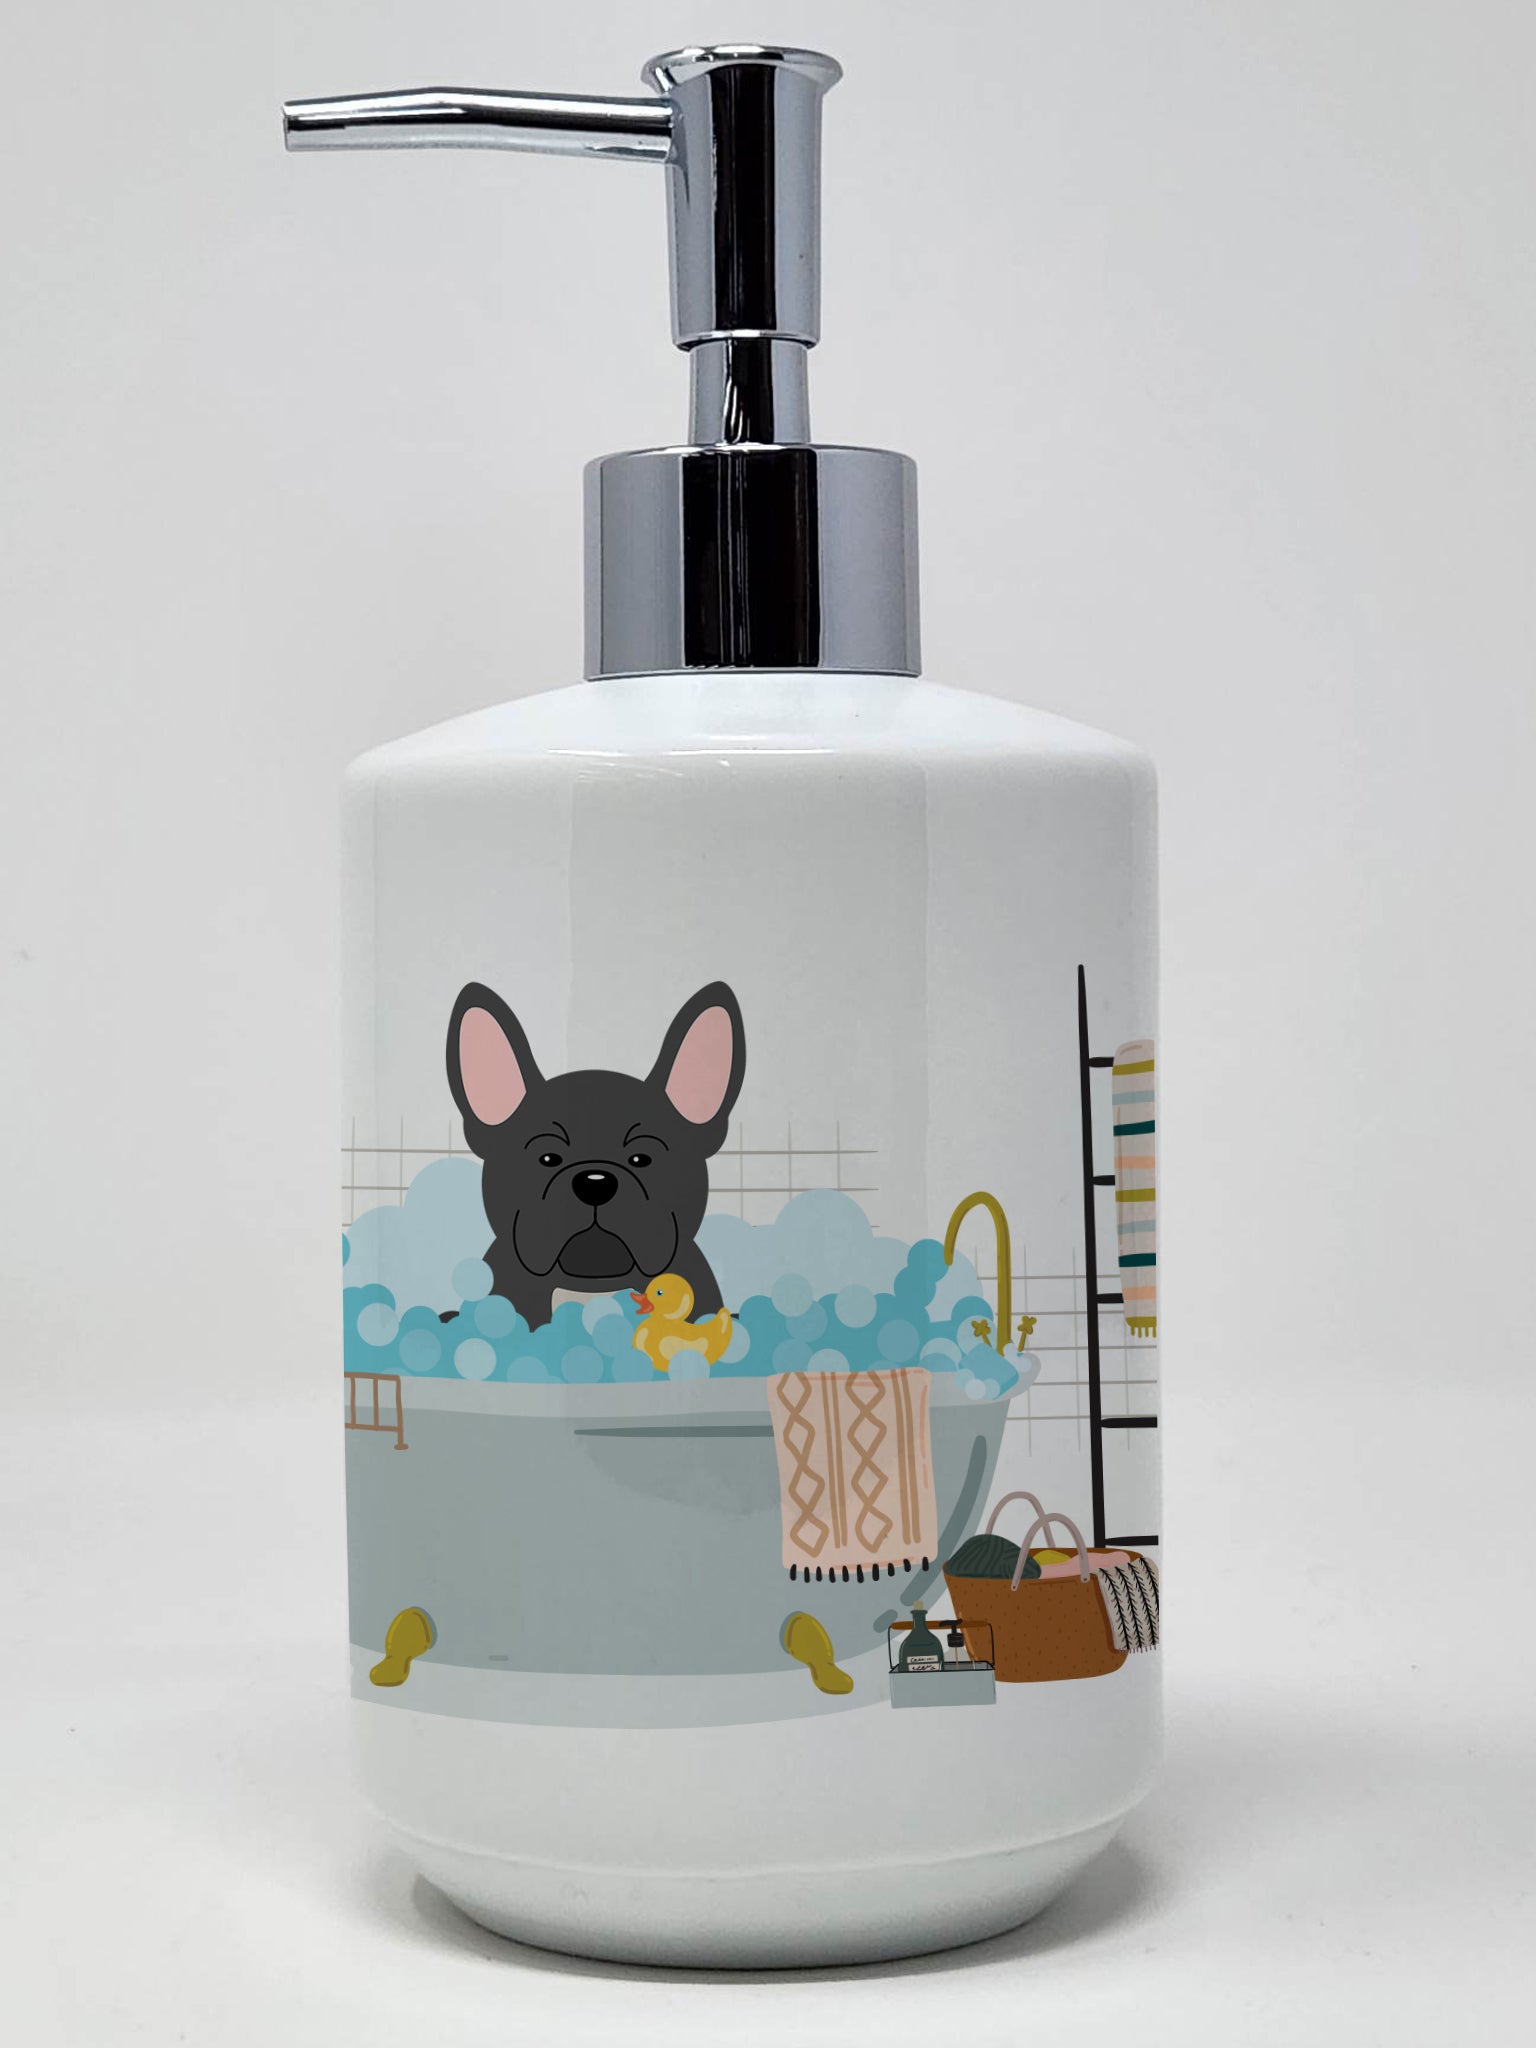 Buy this Black French Bulldog in Bathtub Ceramic Soap Dispenser